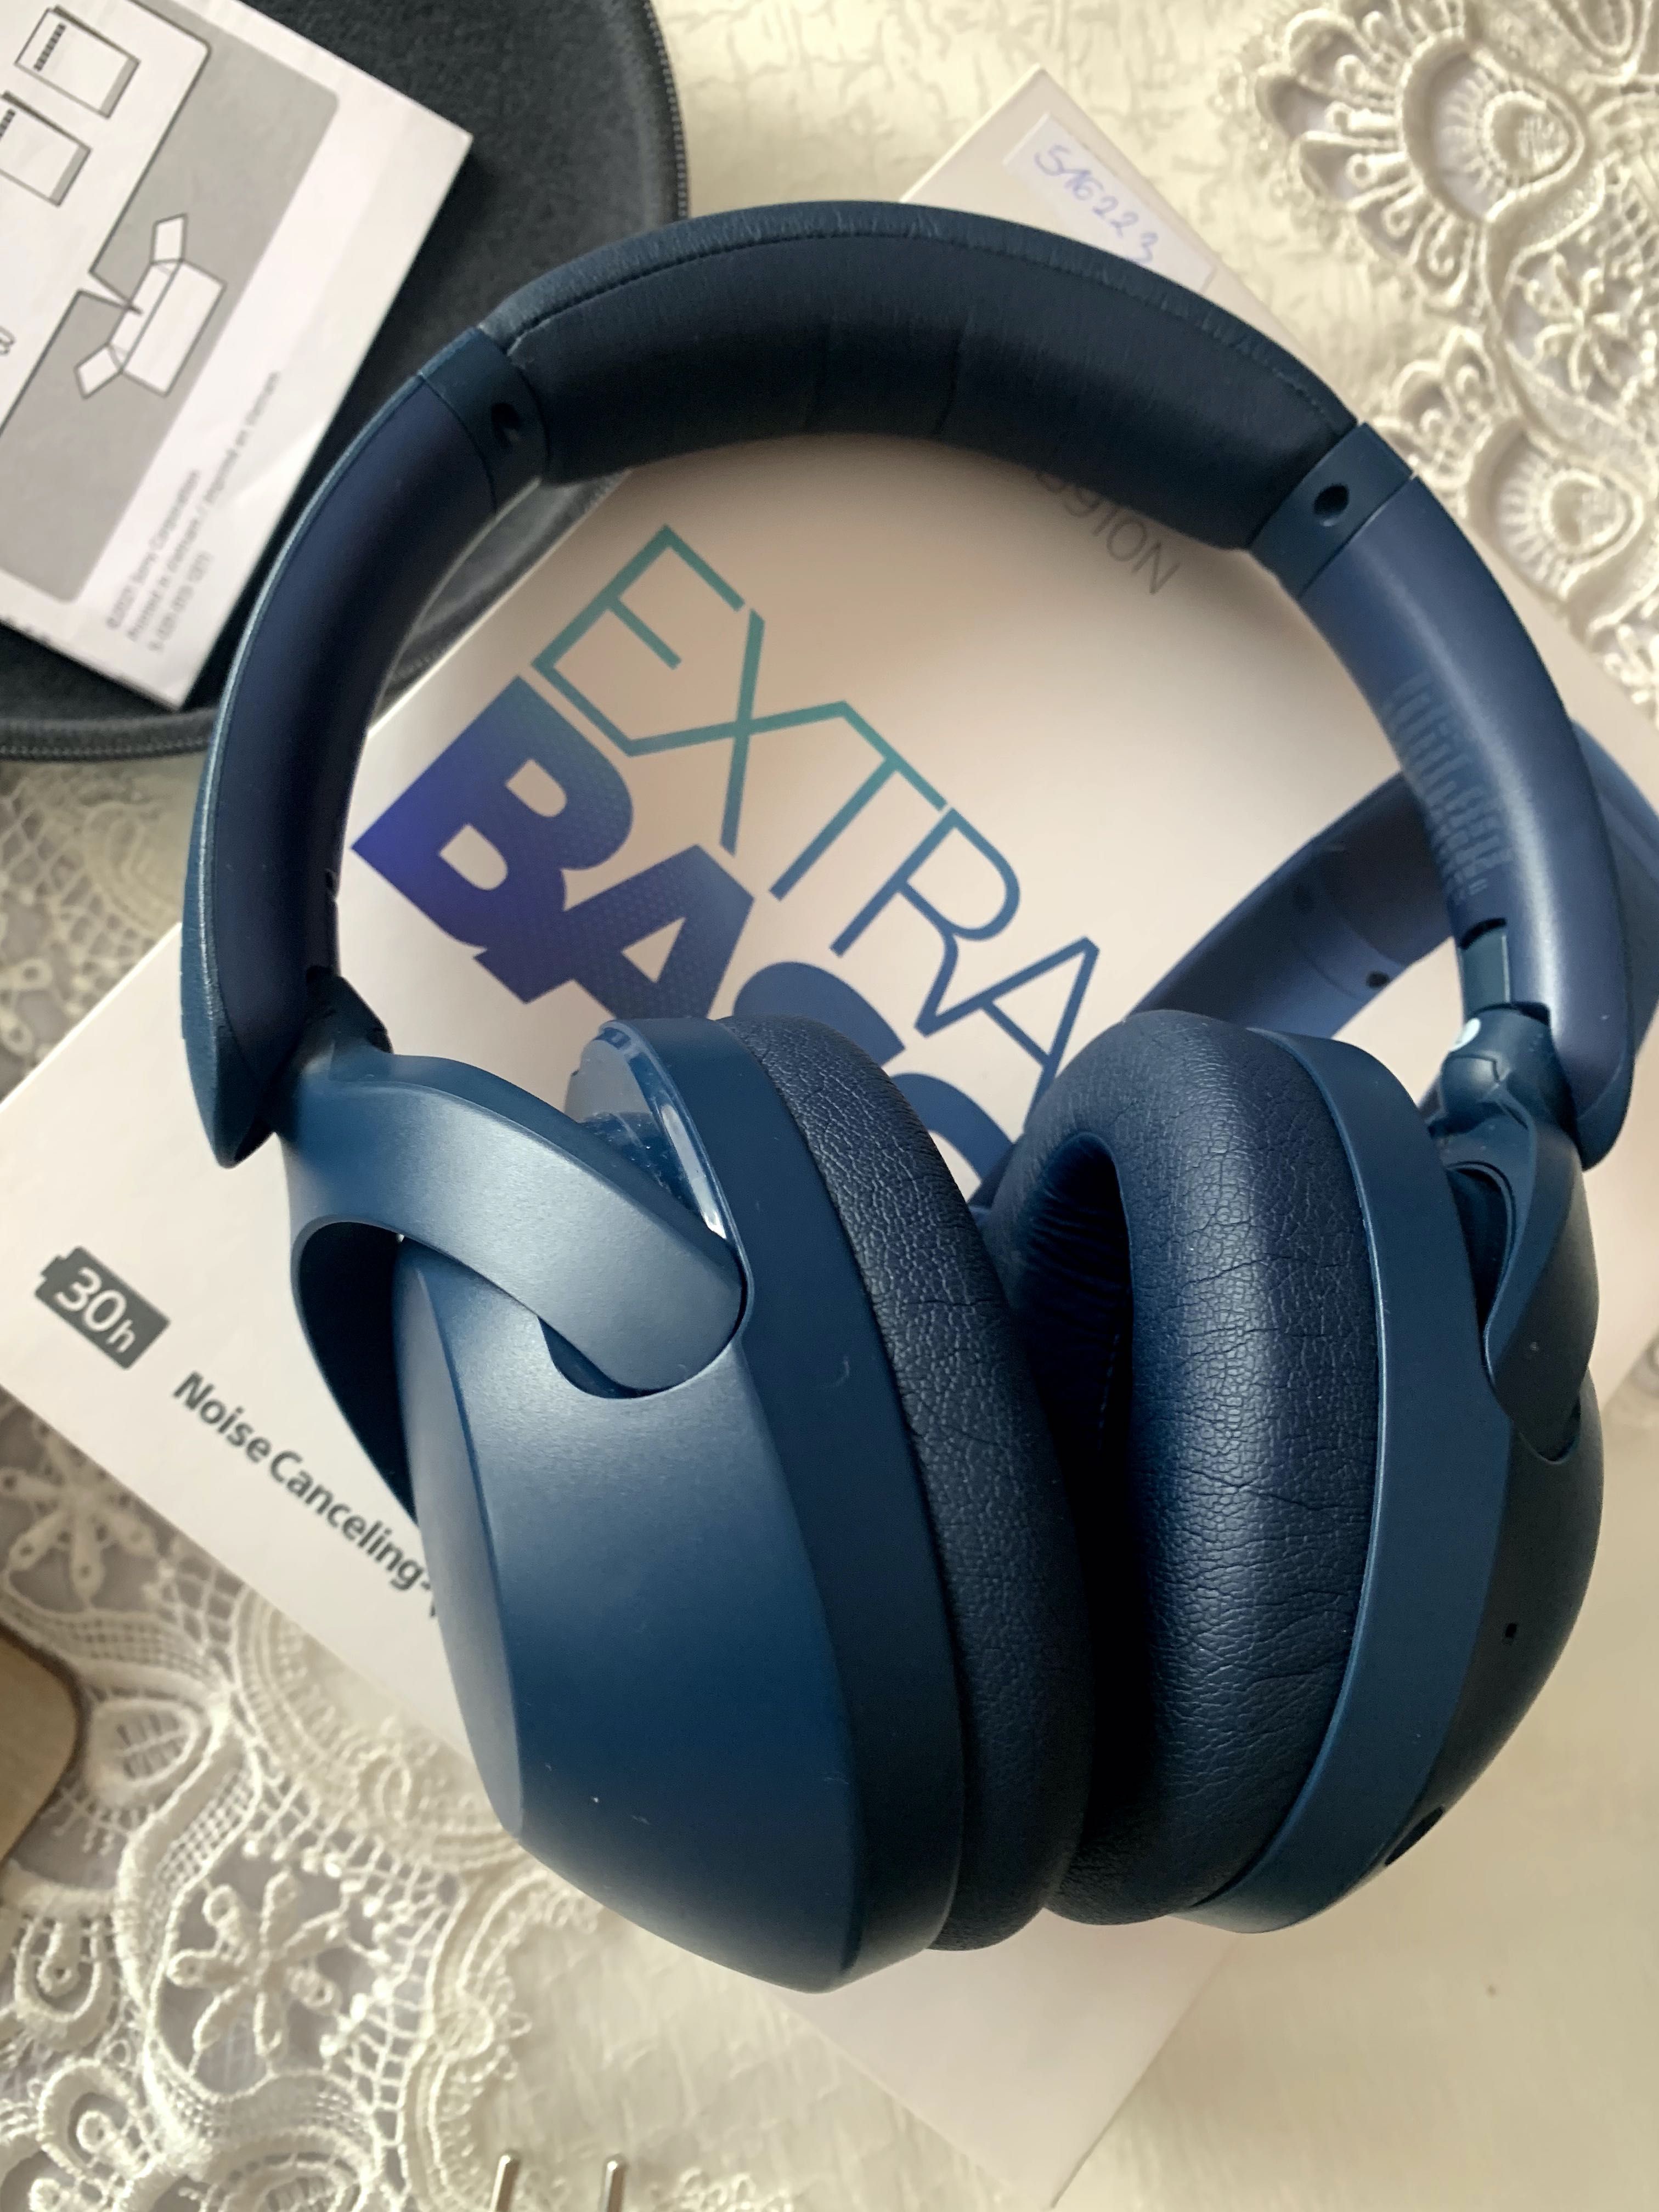 Słuchawki bezprzewodowe SONY WH-XB910N Extra Bass Niebieski